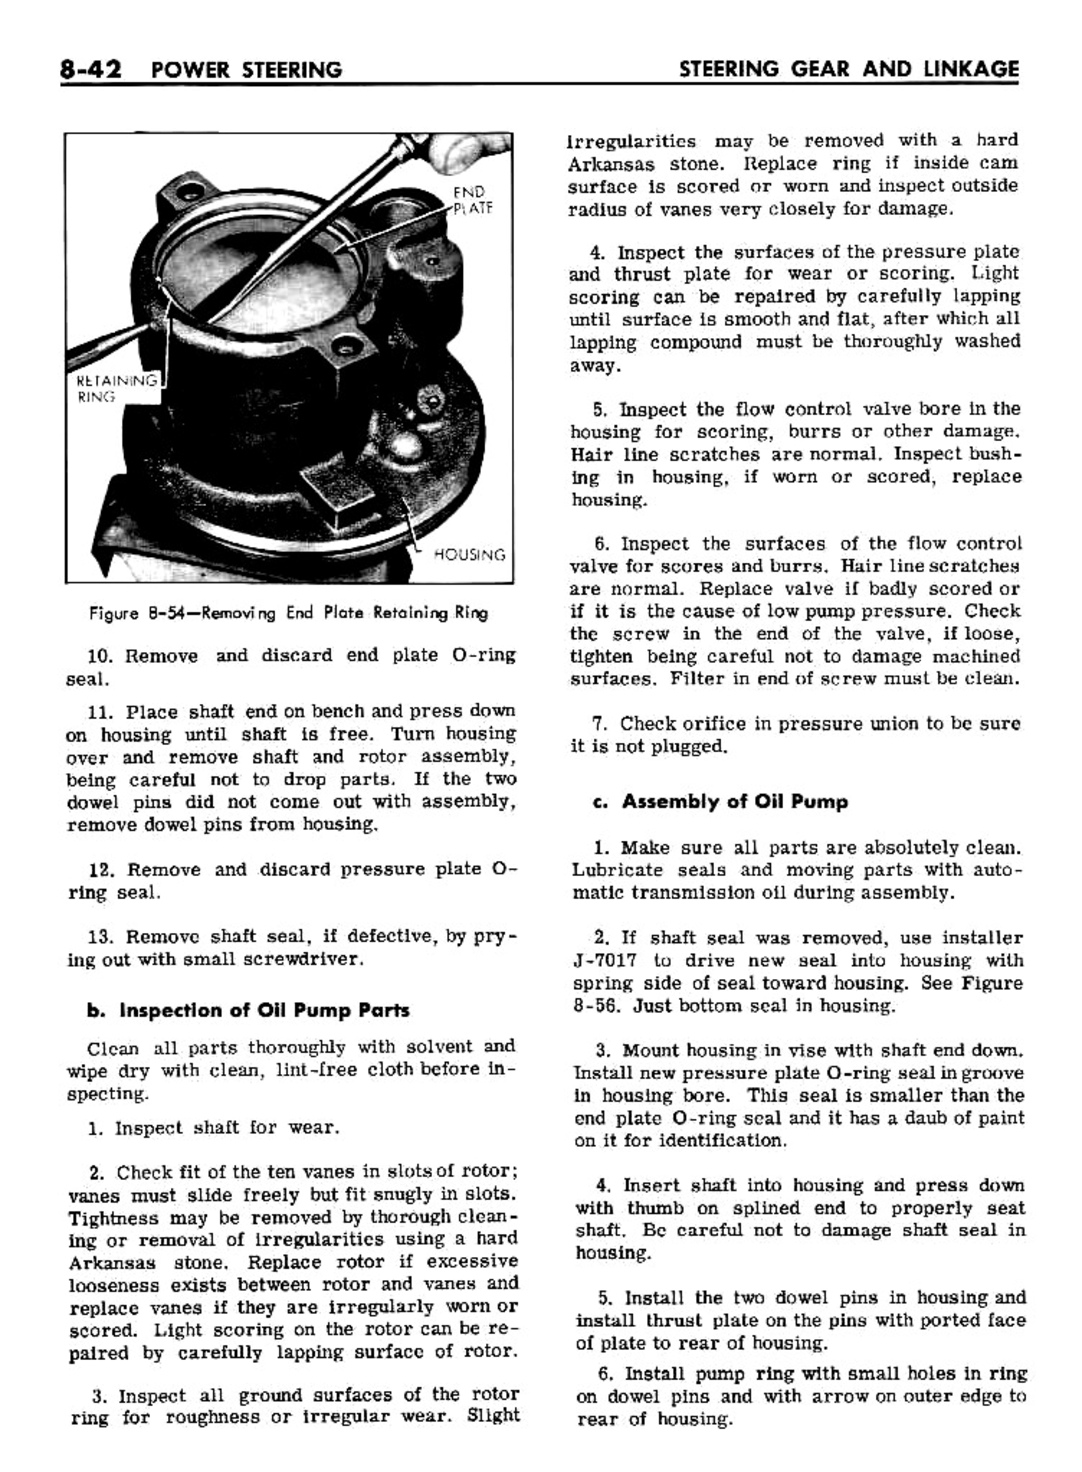 n_08 1961 Buick Shop Manual - Steering-042-042.jpg